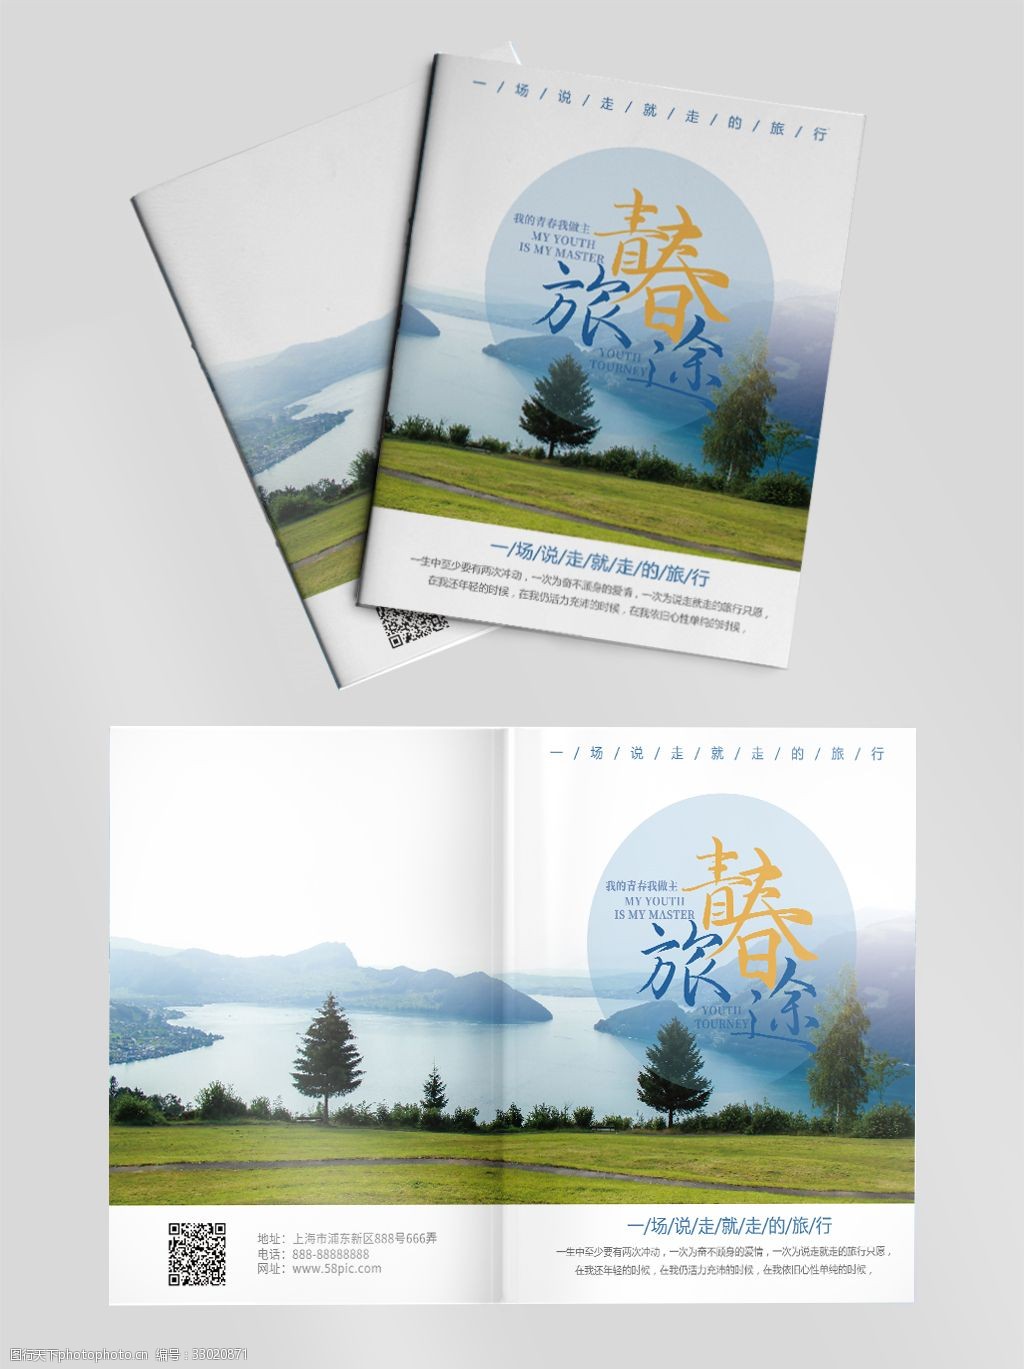 关键词:简约大气青春旅途旅行封面设计 旅游画册宣传封面 旅游画册